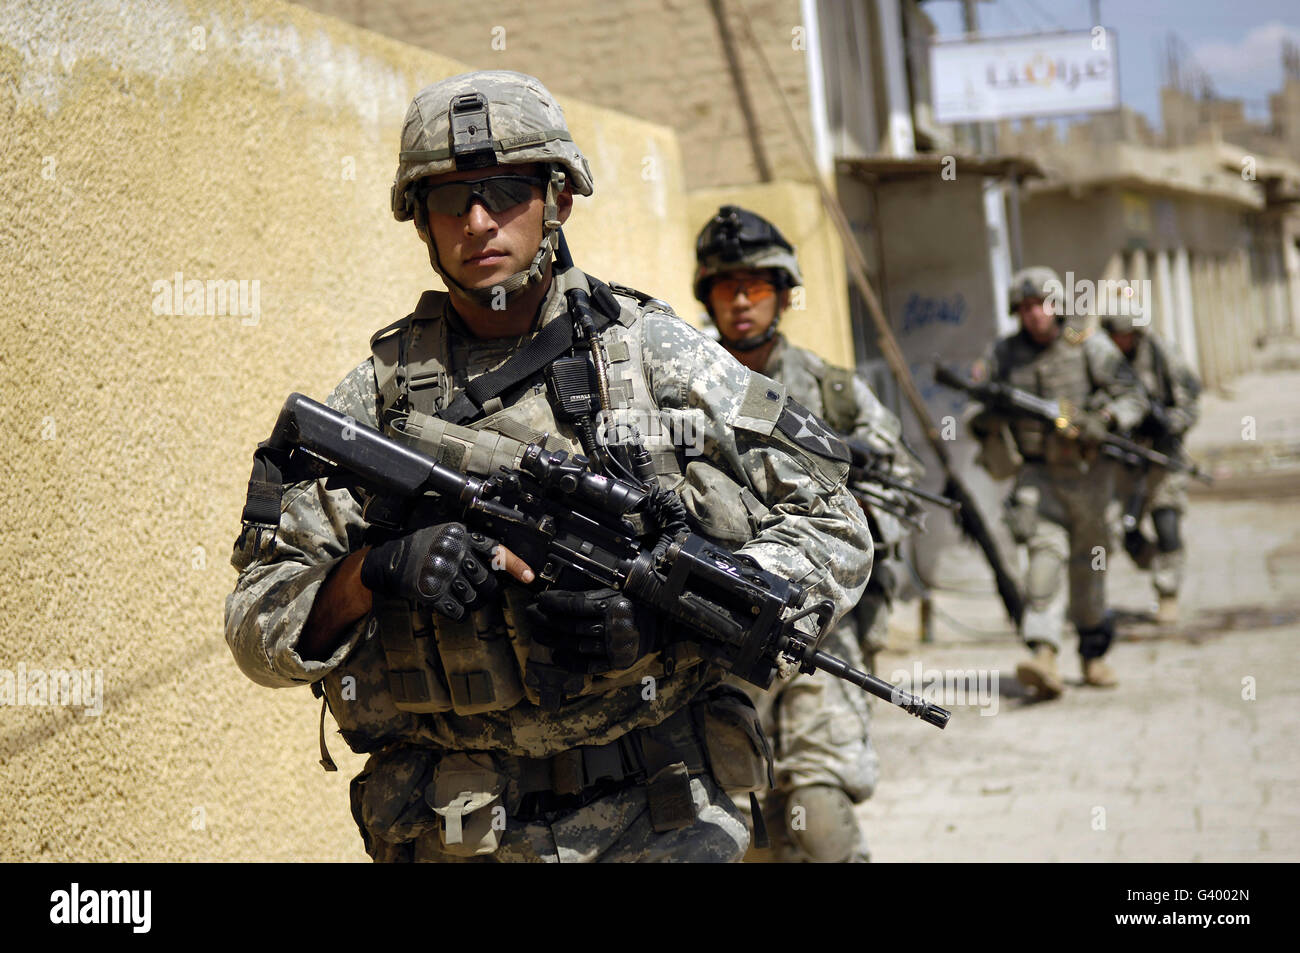 Sargento del Ejército de Estados Unidos llevando su equipo durante una de acordonamiento y búsqueda en el viejo Baqubah, Iraq. Foto de stock